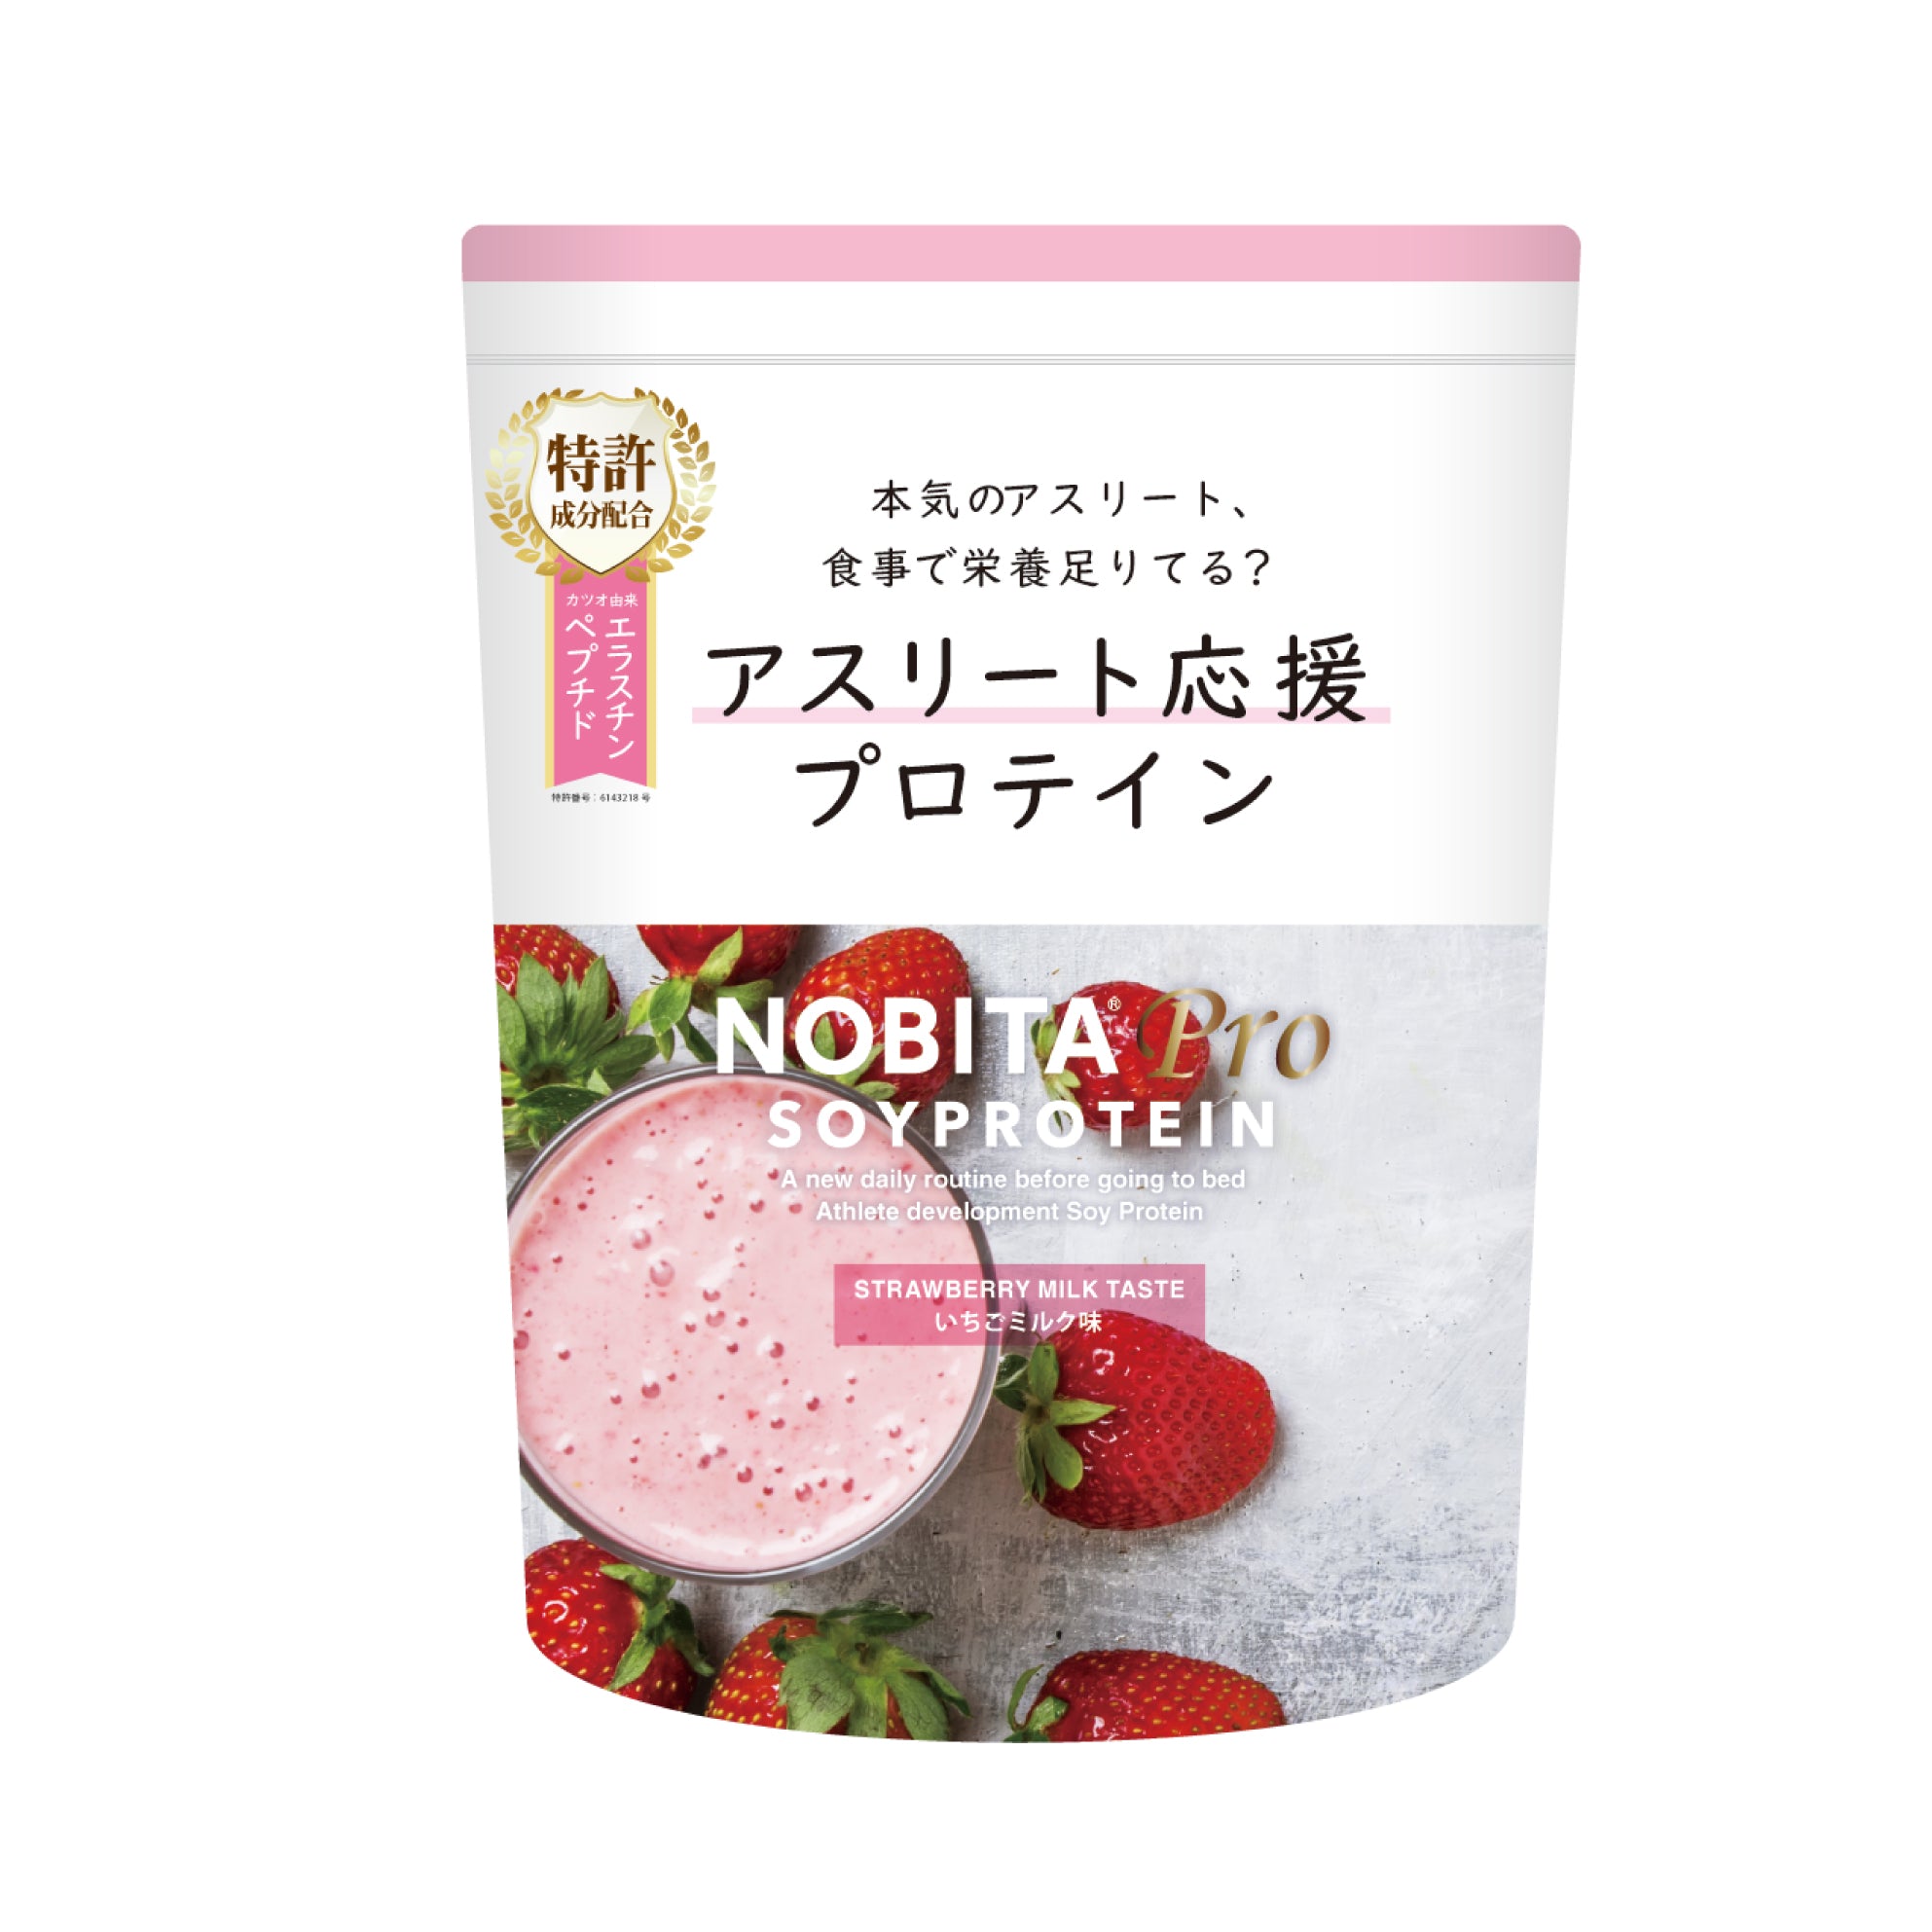 NOBITA-Proソイプロテイン - いちごミルク味 750g – NOBITA ...